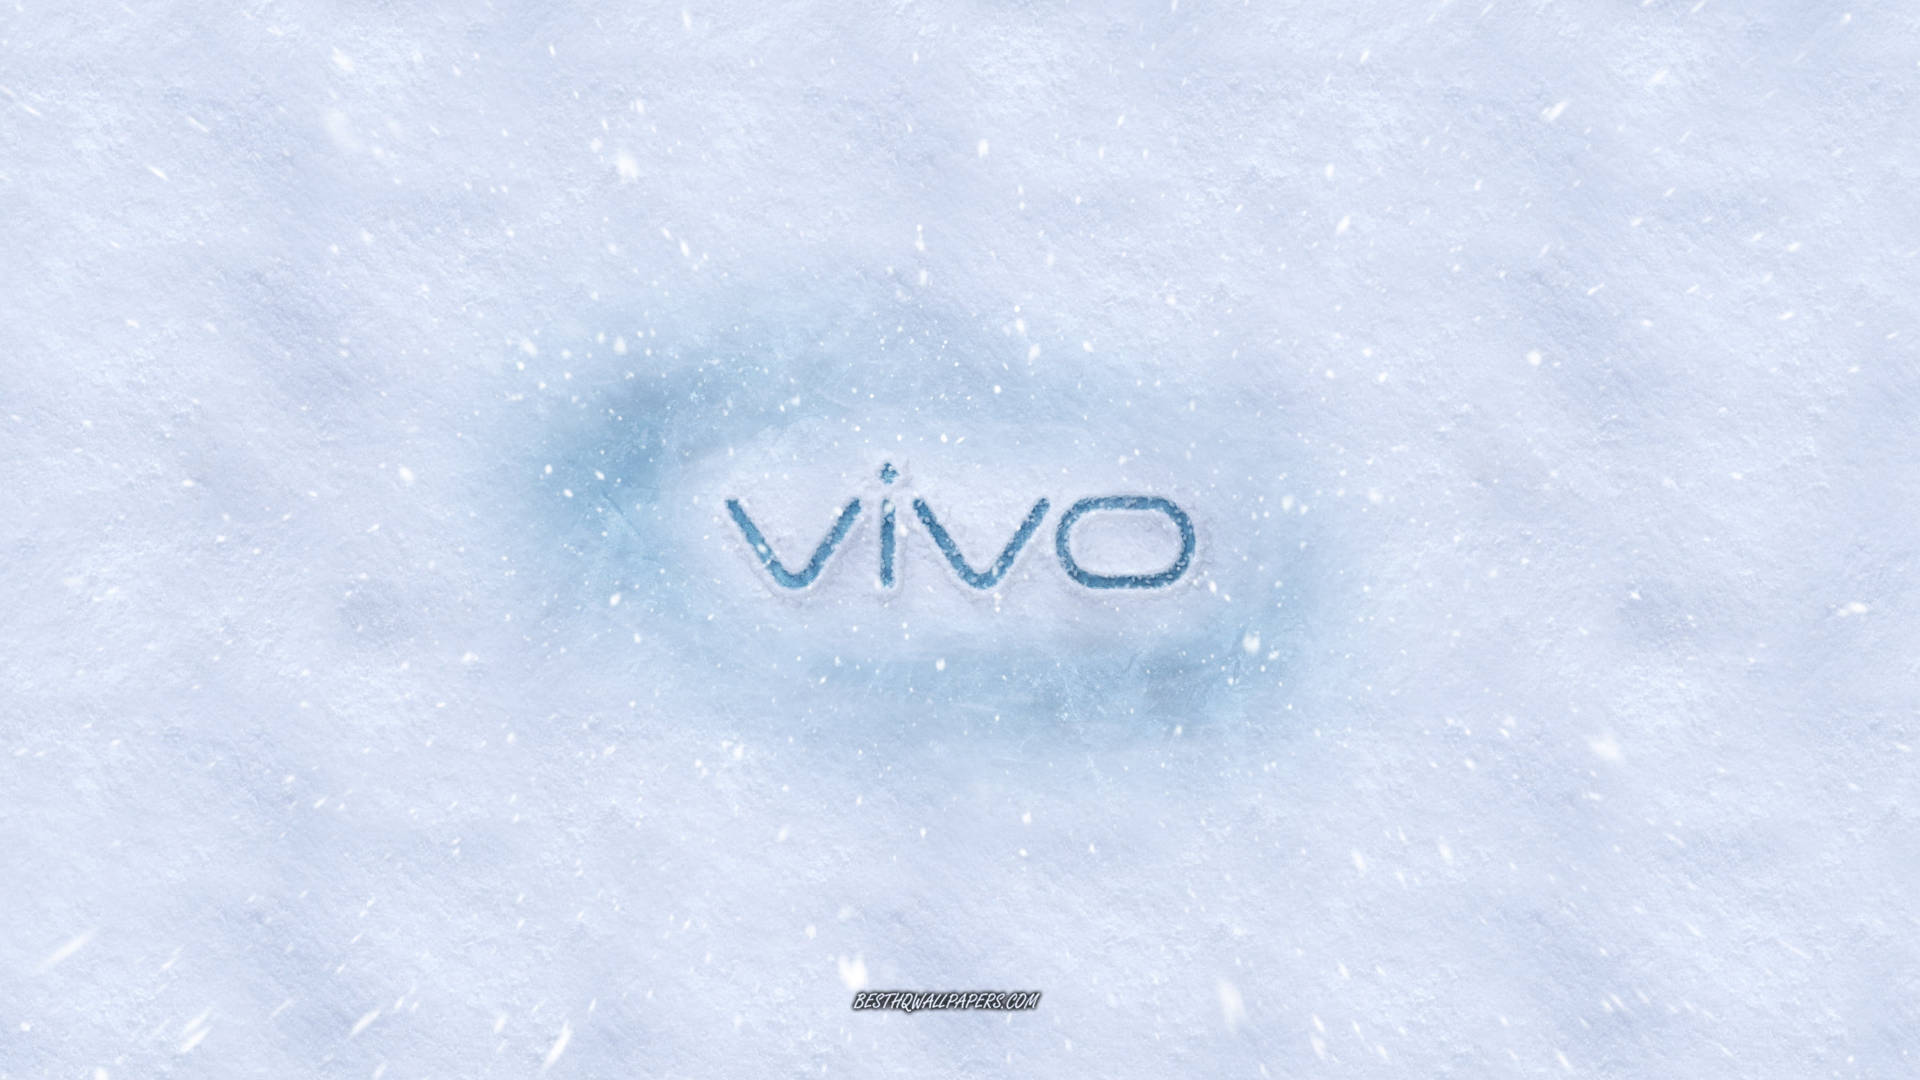 Vivo Logo In Snow Wallpaper